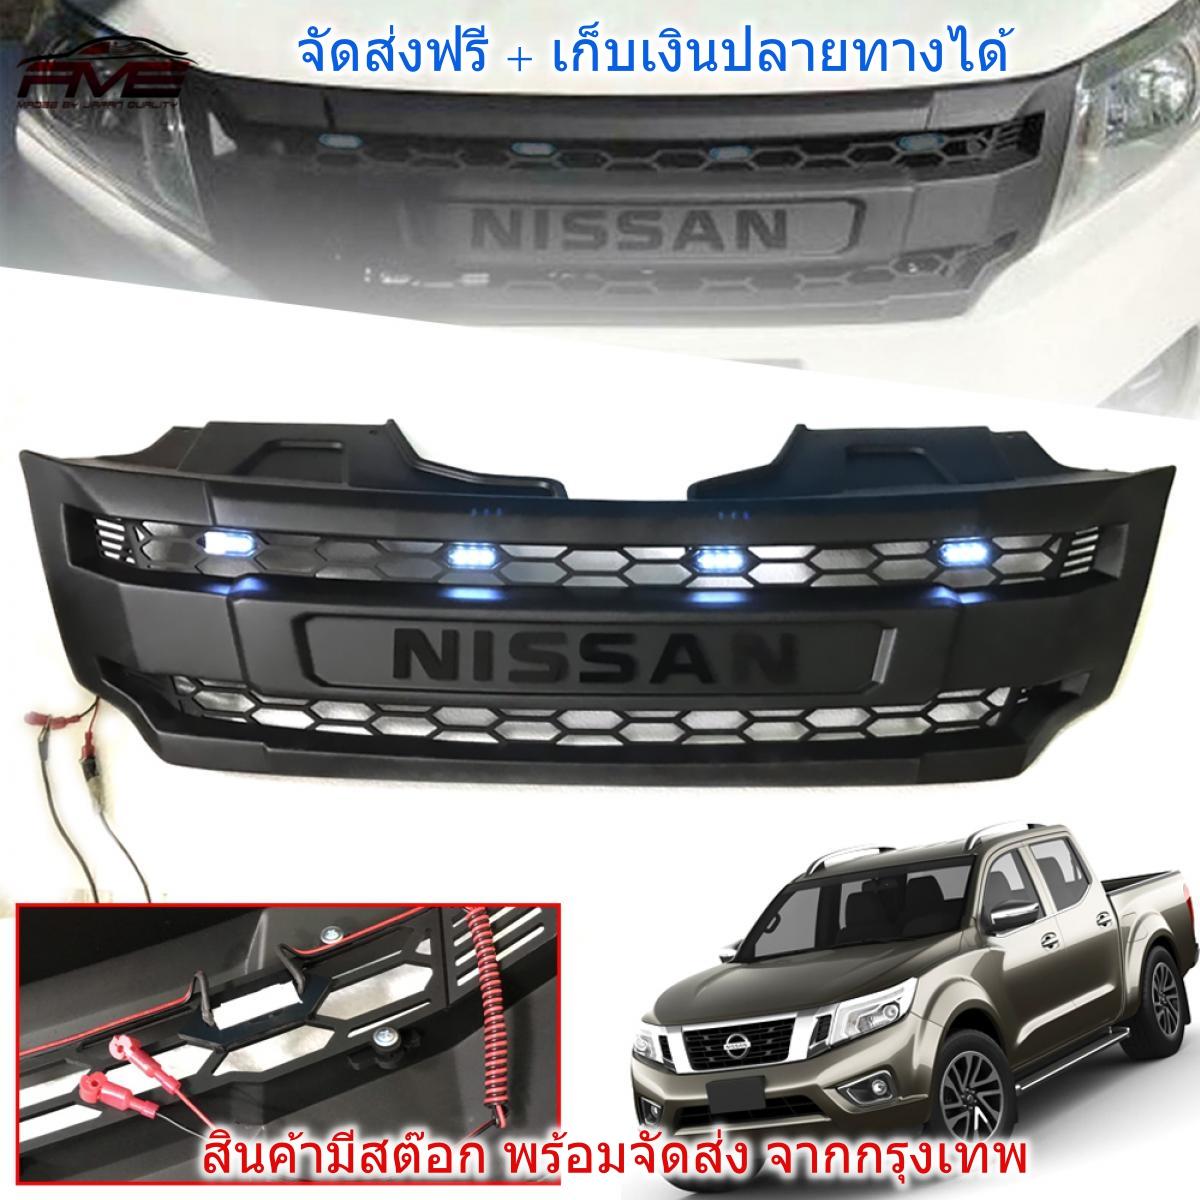 กระจังหน้า navara กระจัง นาวารา LED รุ่น NP300 ไฟขาว 4 จุด งานไทย ABS คุณภาพสูง